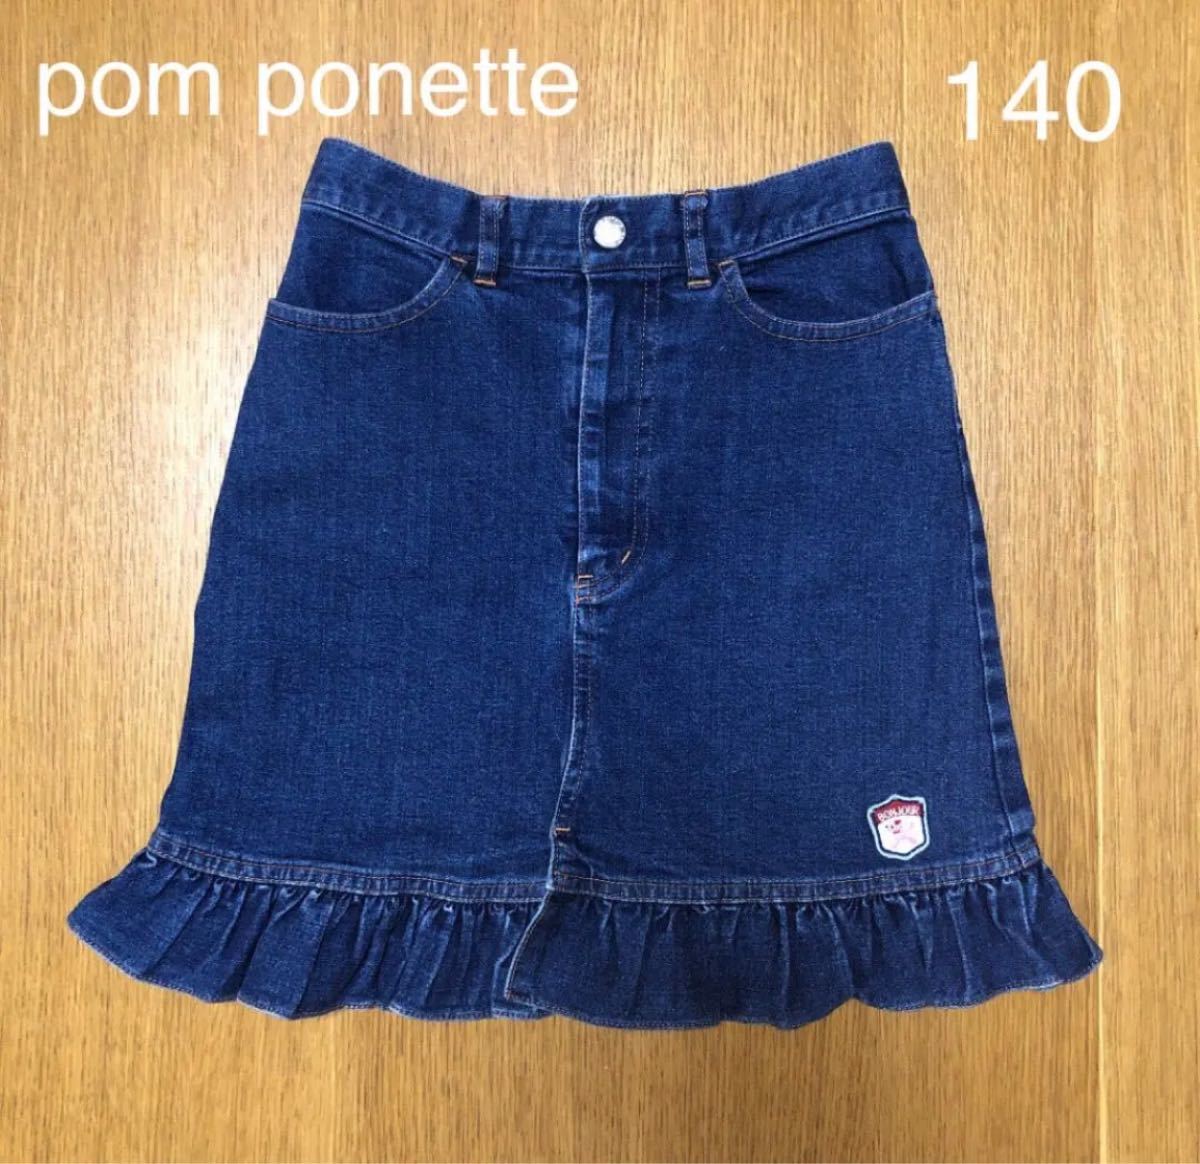 ポンポネット140デニムスカート - スカート